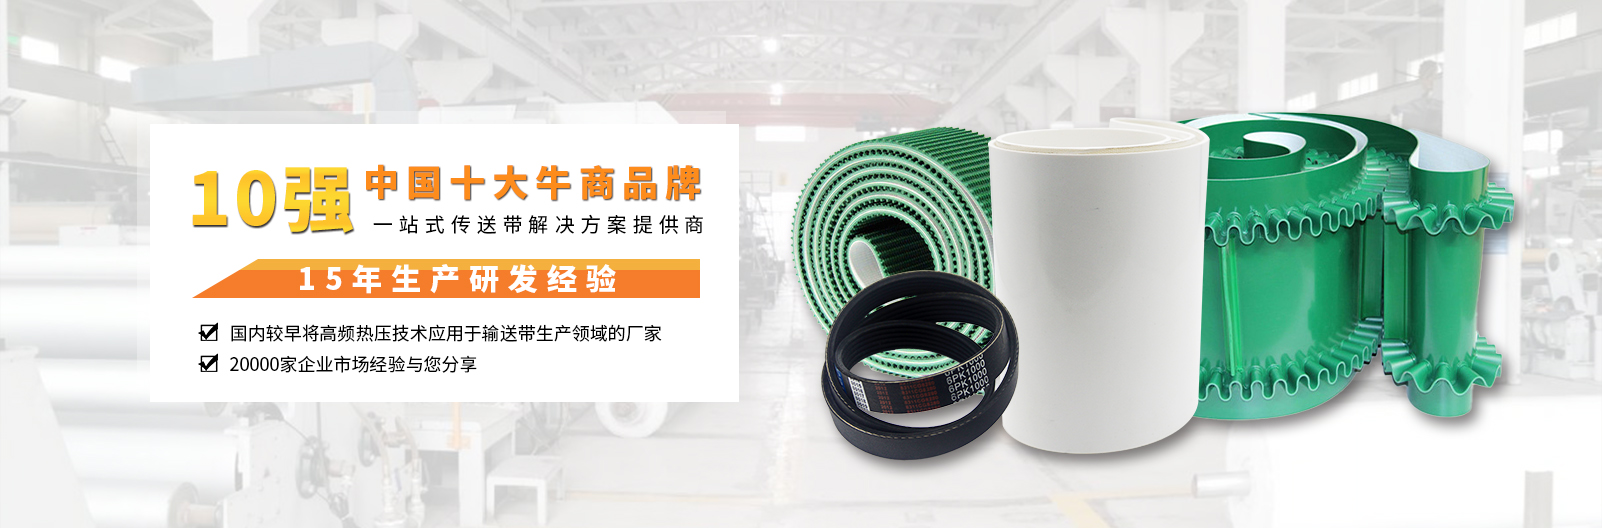 安耐15年生产研发经验，中国工业皮带品牌